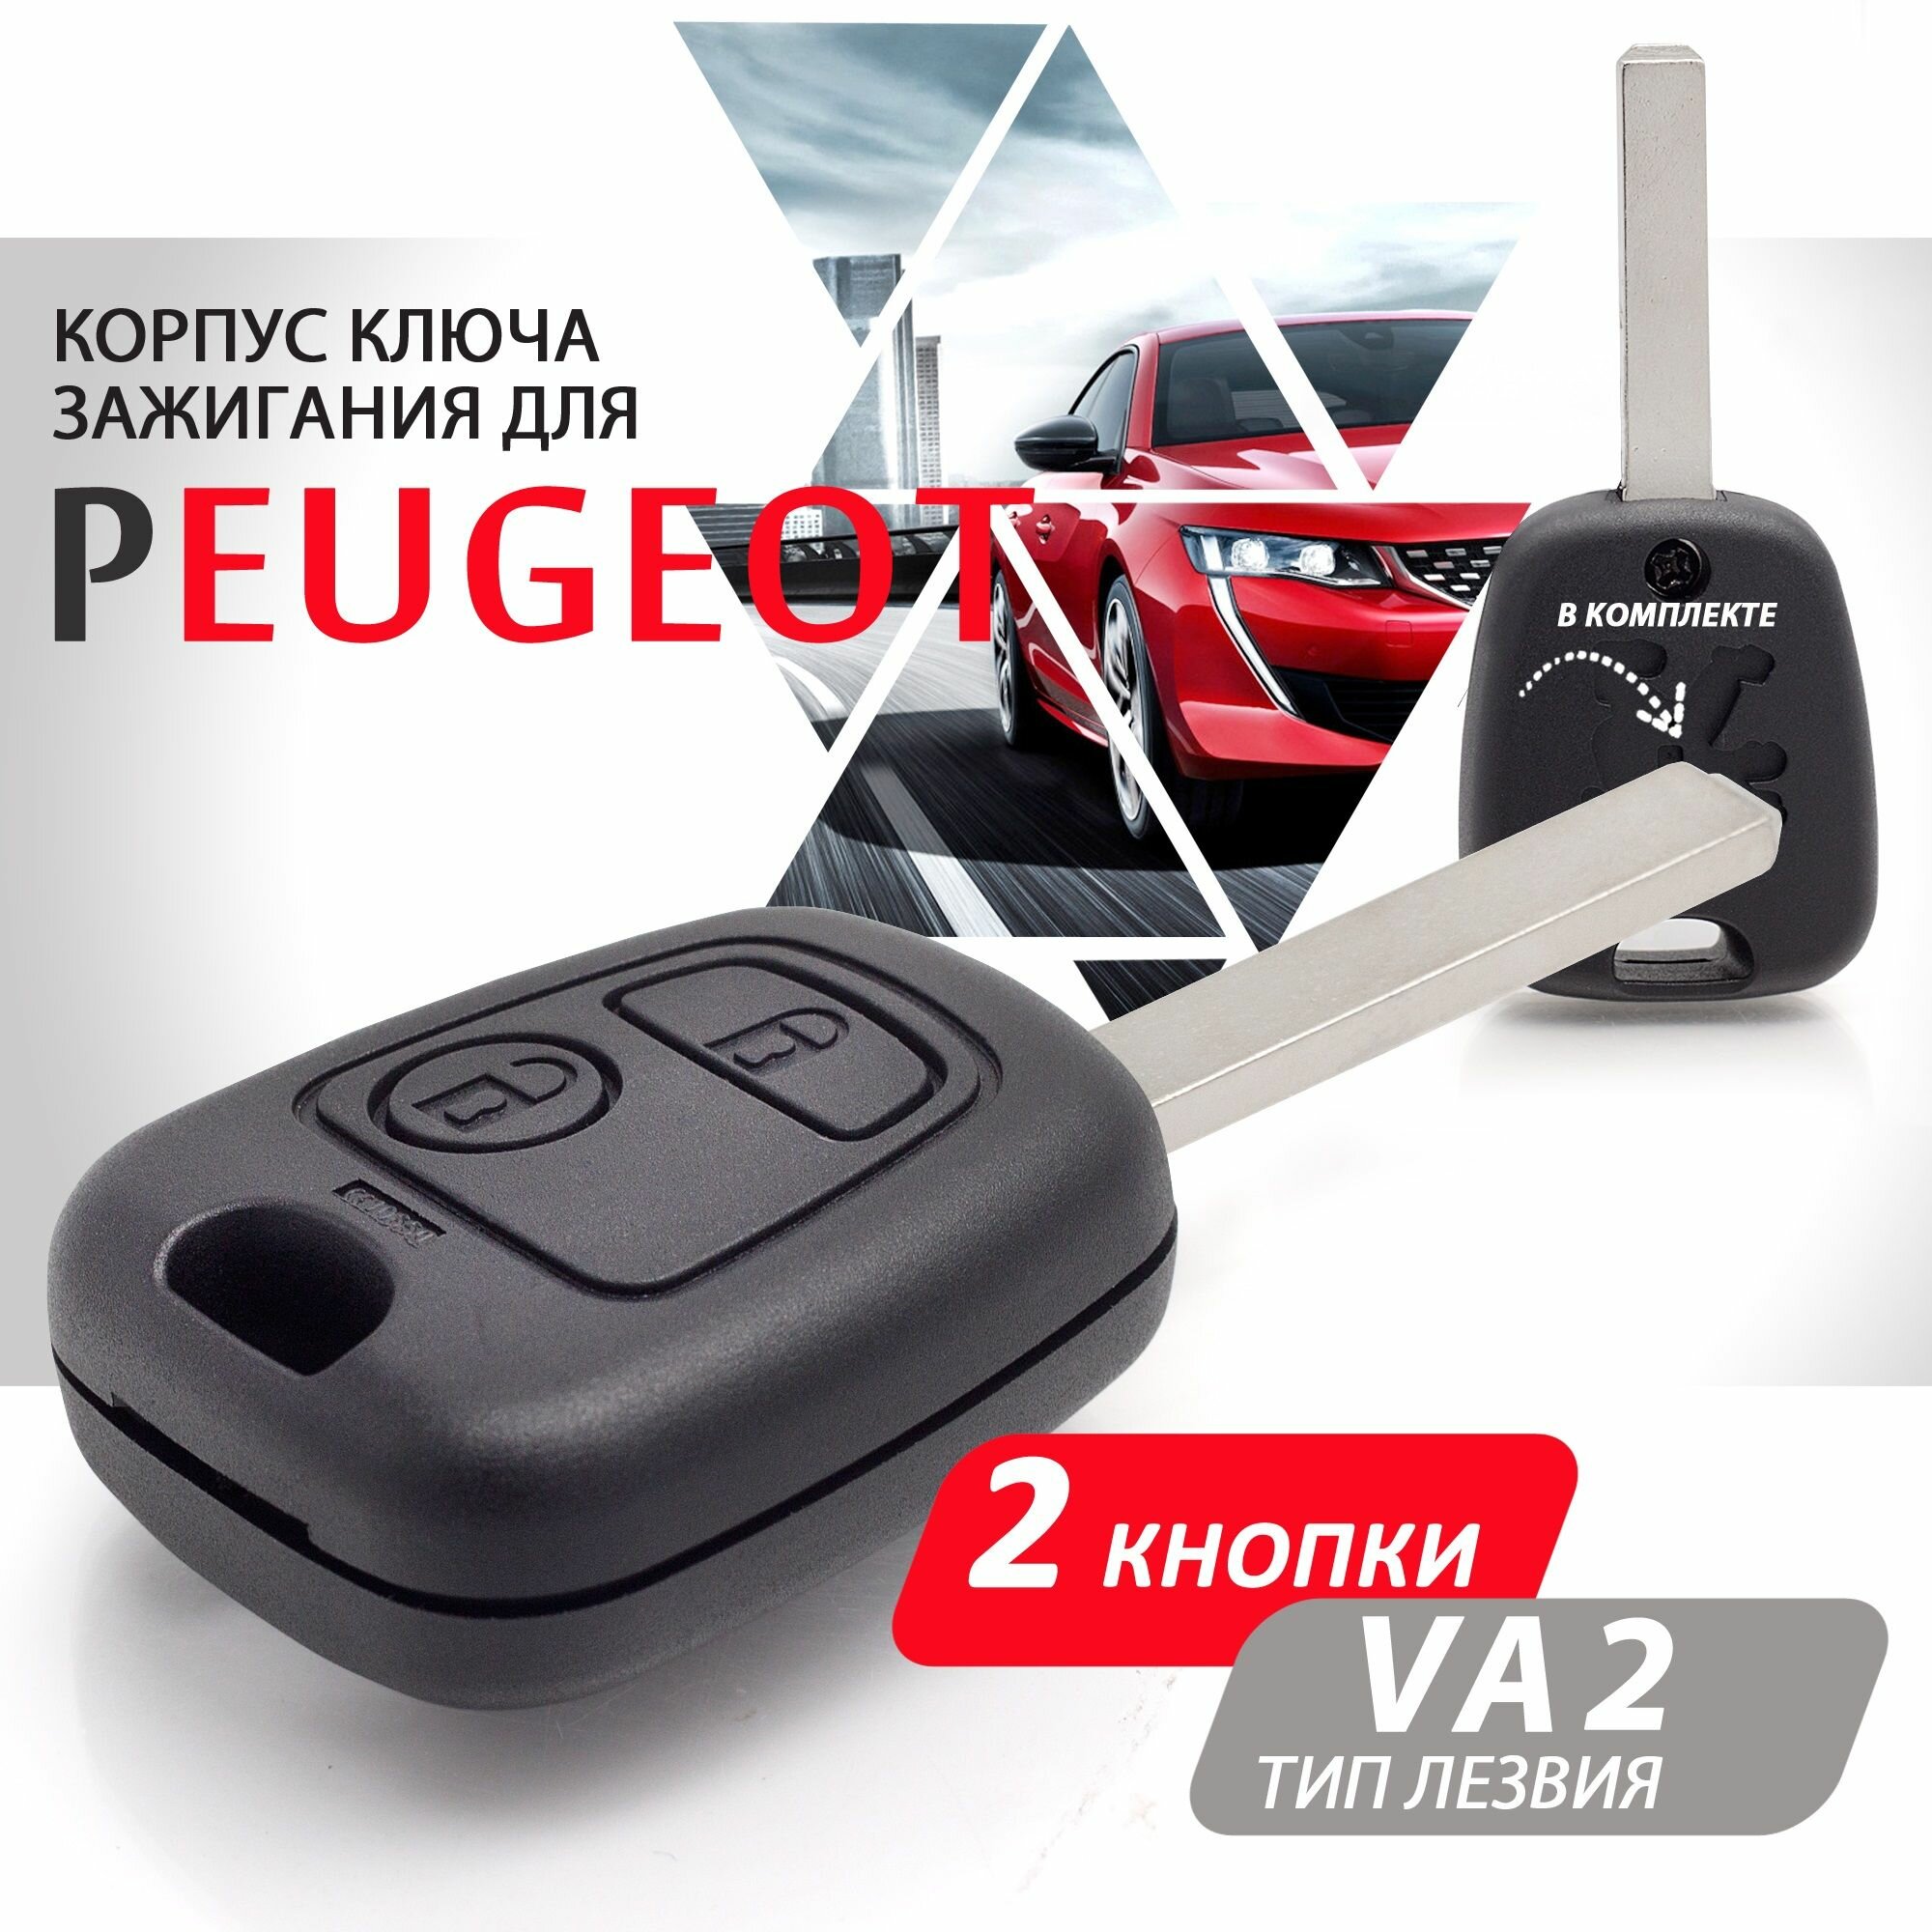 Корпус ключа зажигания для Peugeot Пежо 107 207 307 407 206 306 406 - 1 штука (2х кнопочный ключ лезвие VA2)